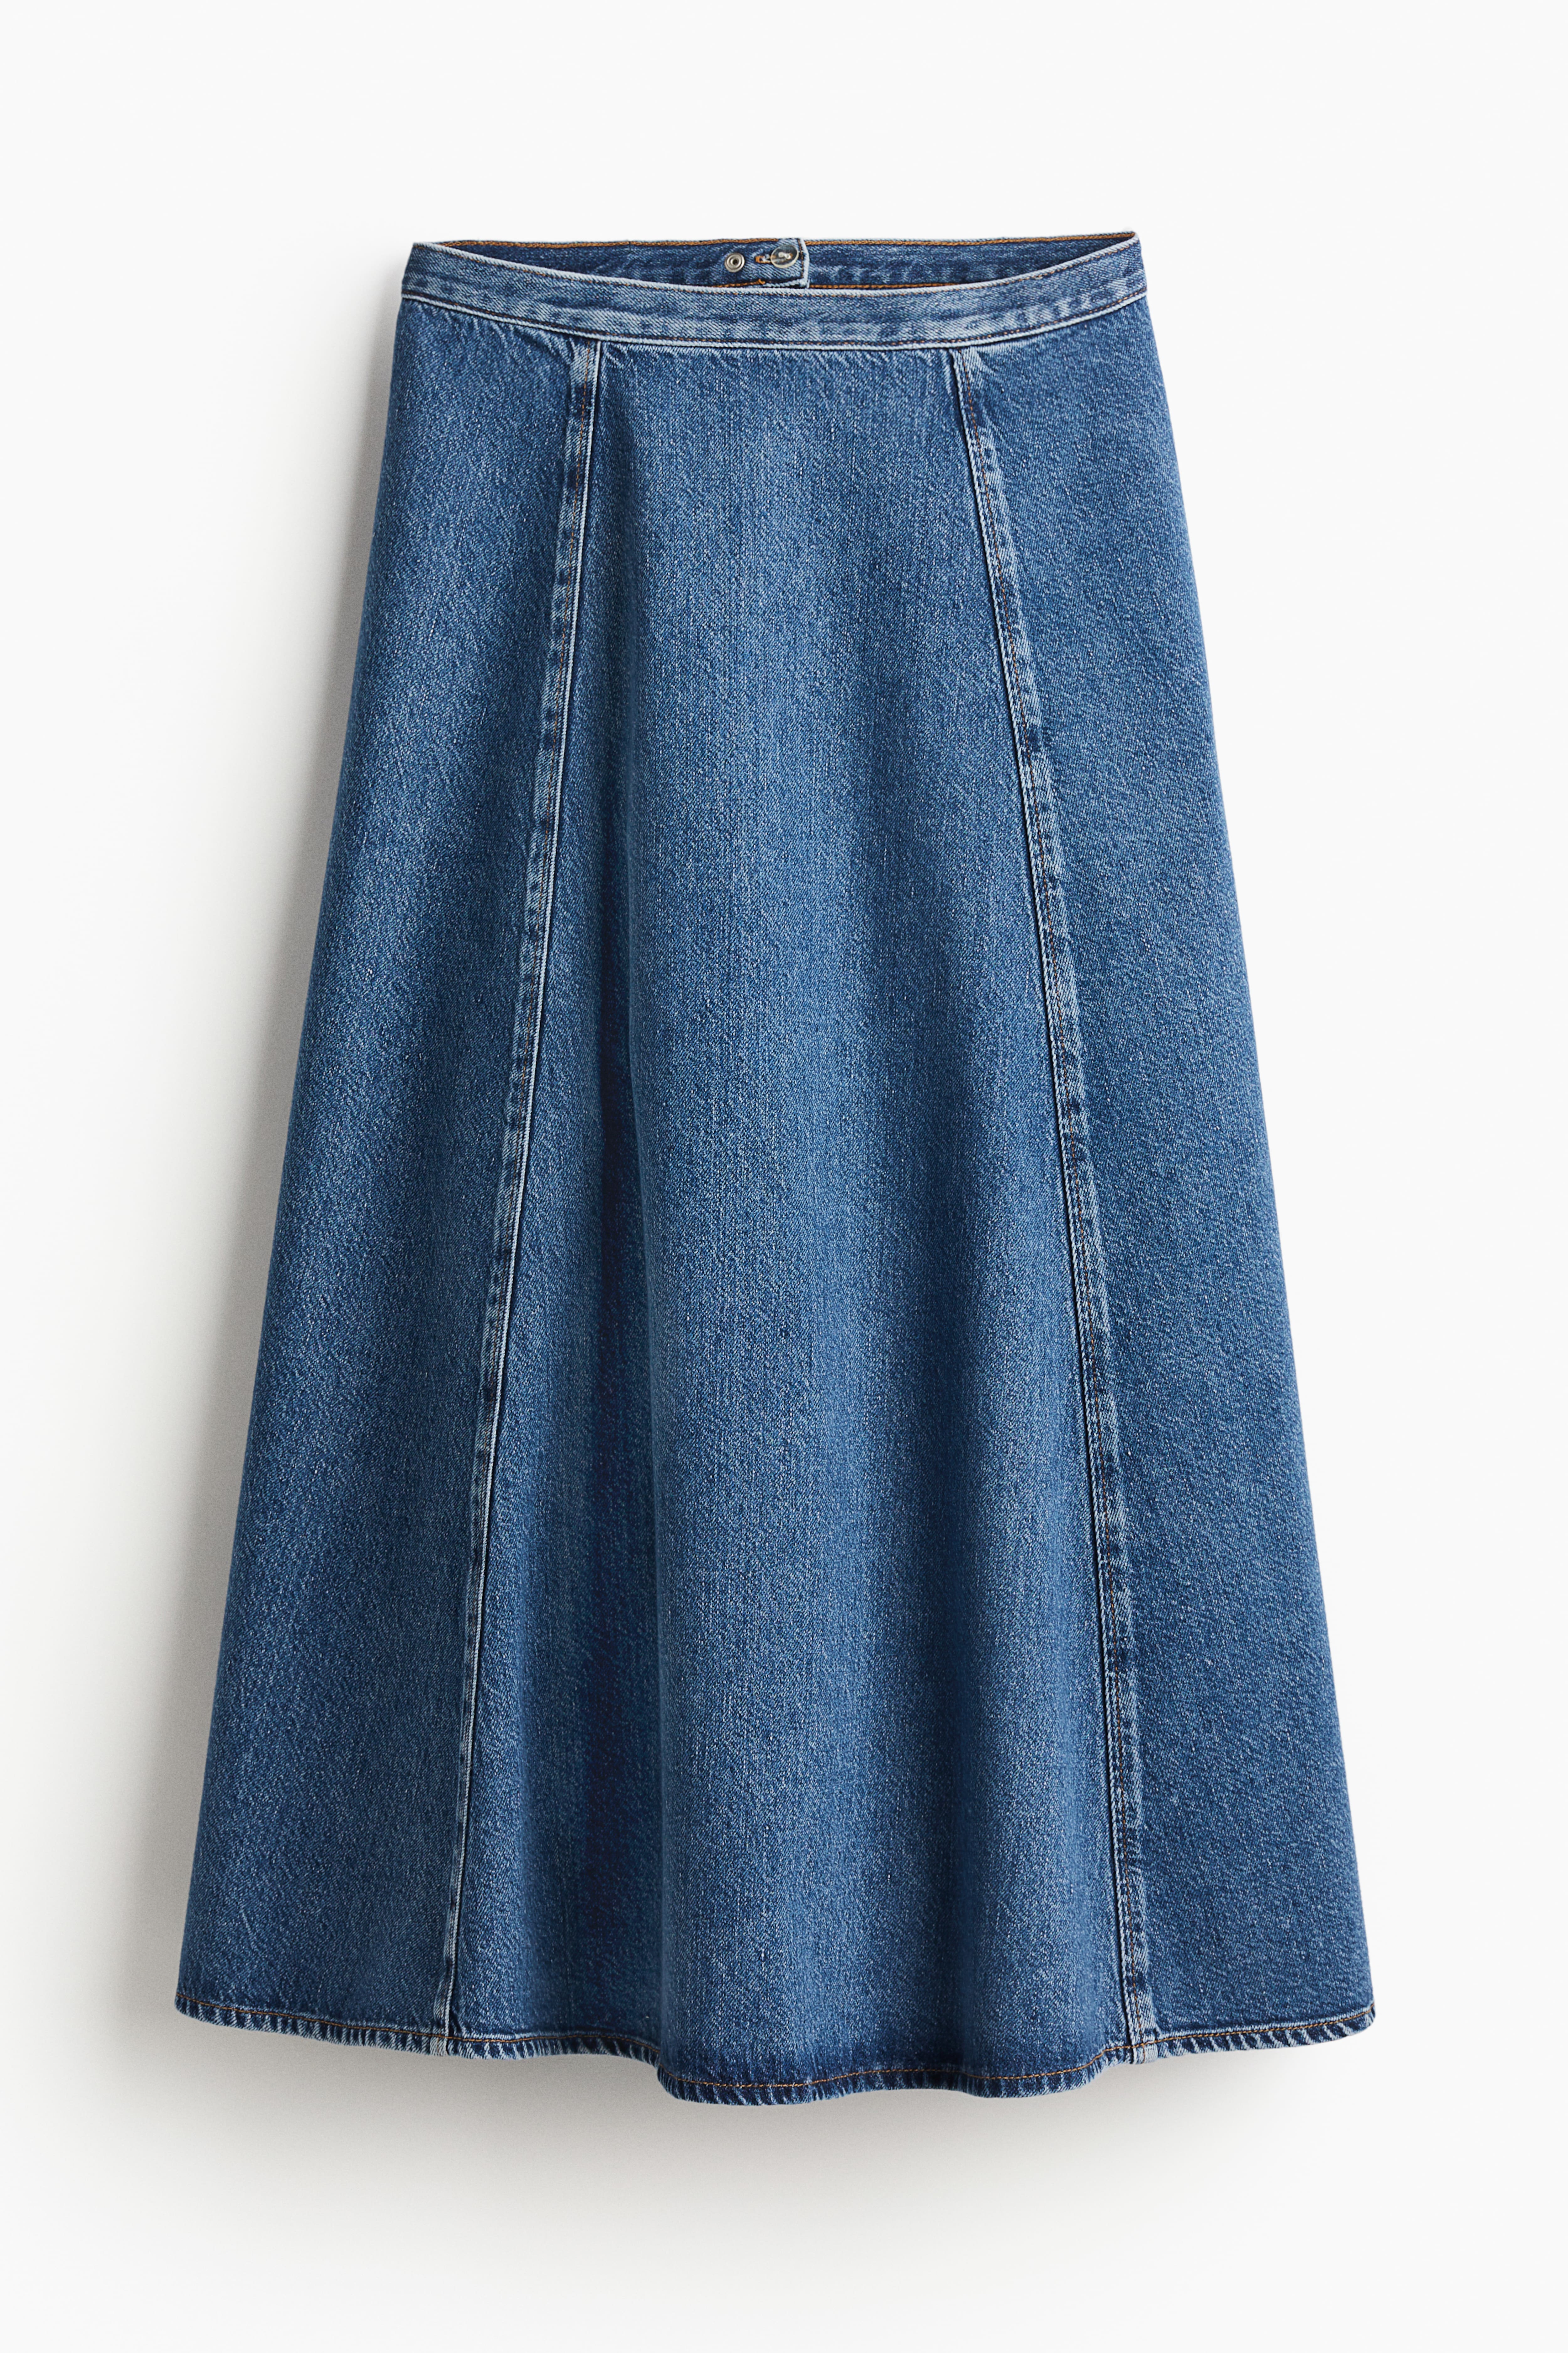 Women's Forever 21 Cotton Dark Wash Blue Jean Denim Flared Mini Skater Skirt  S | eBay